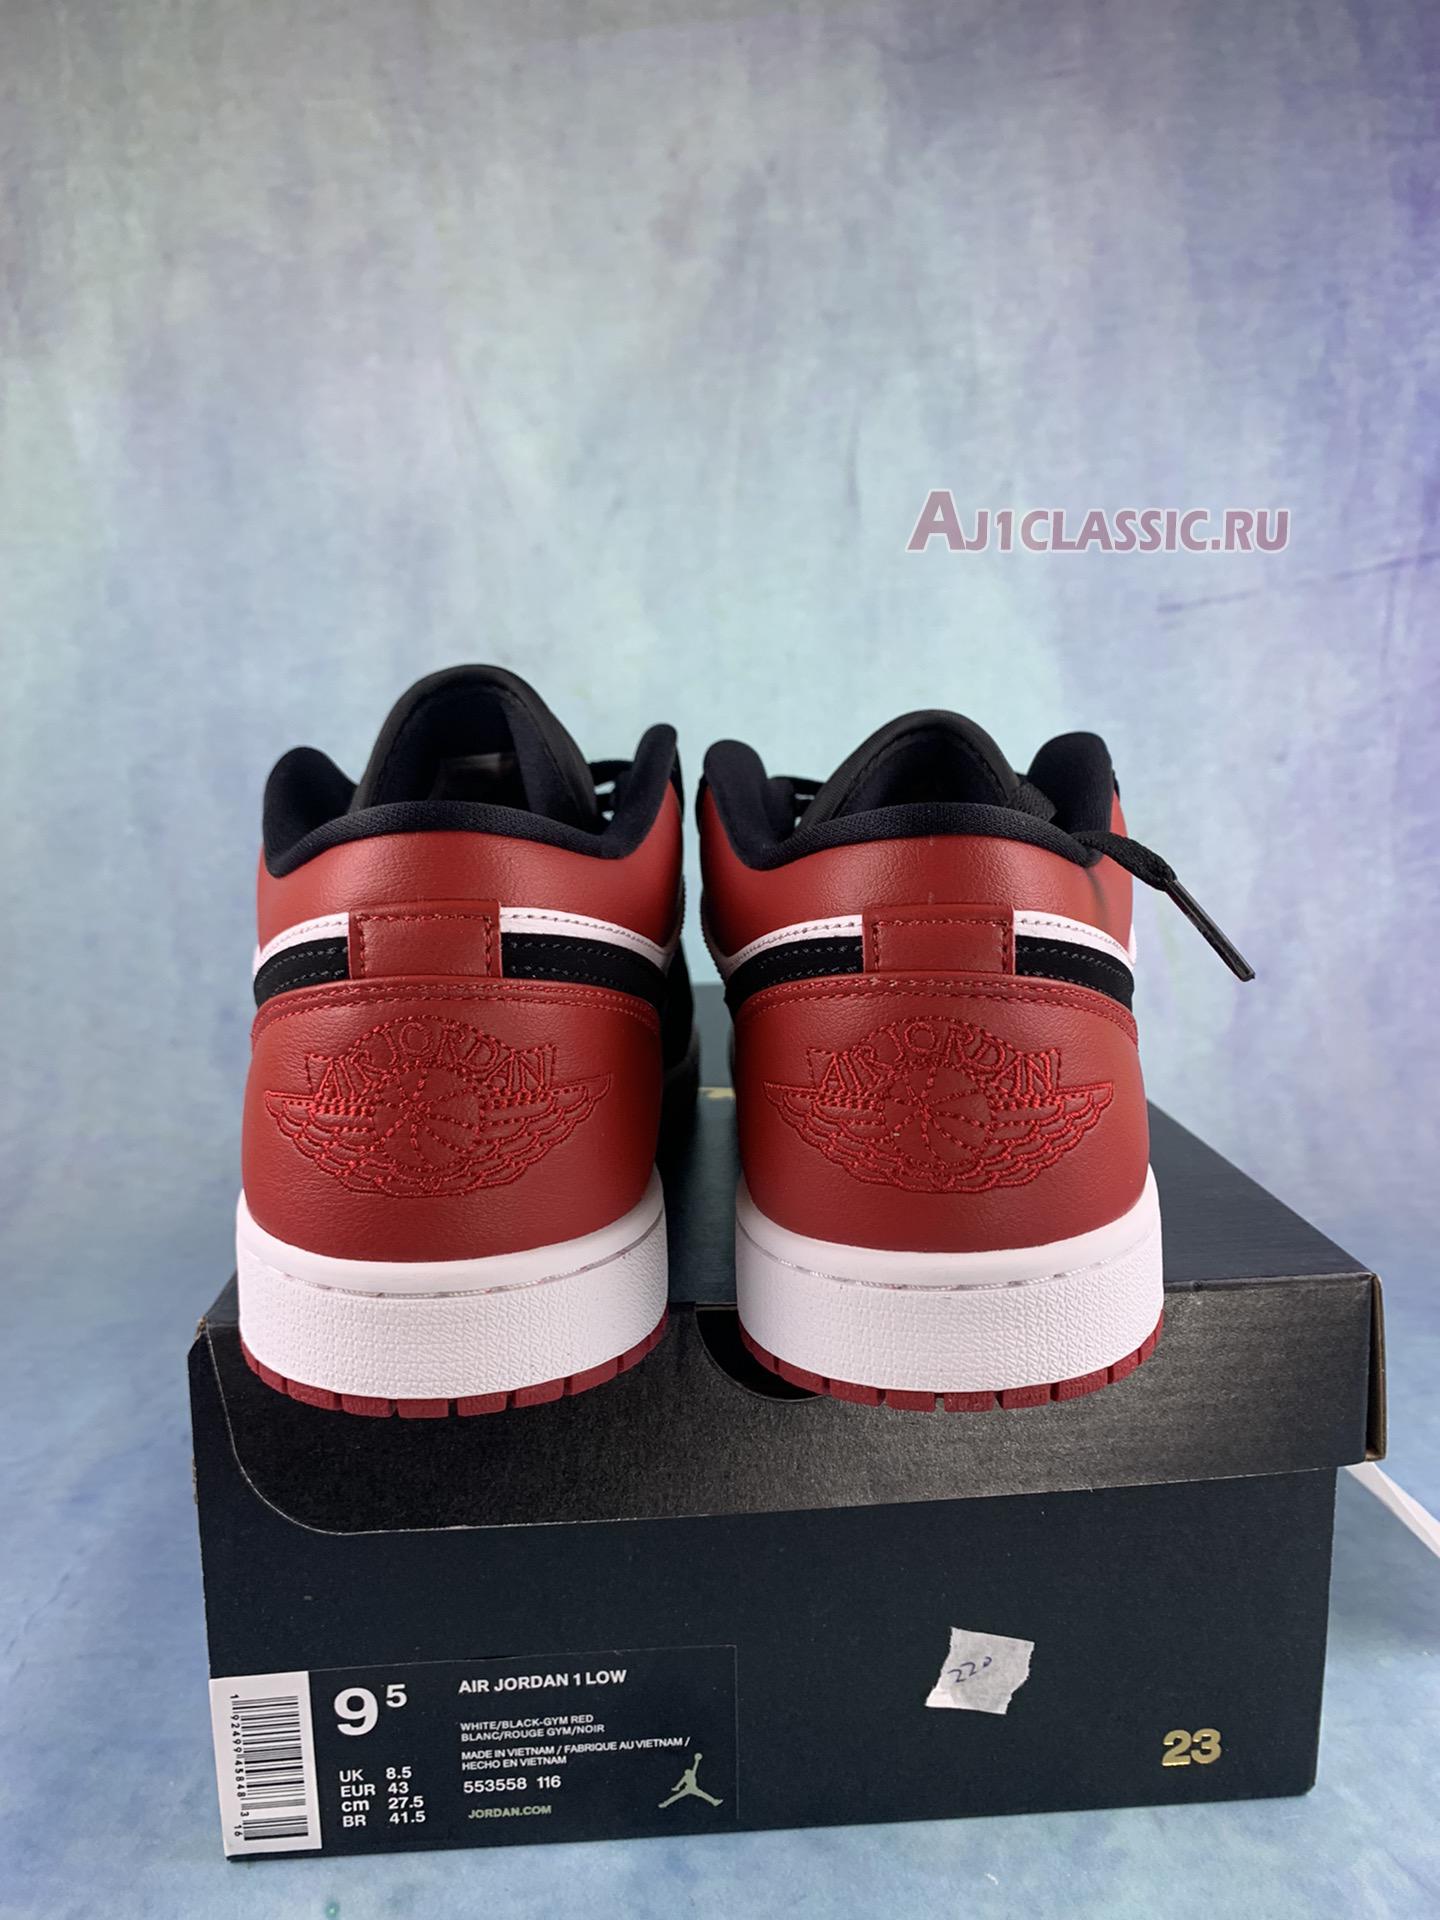 Air Jordan 1 Low "Black Toe" 553558-116-2